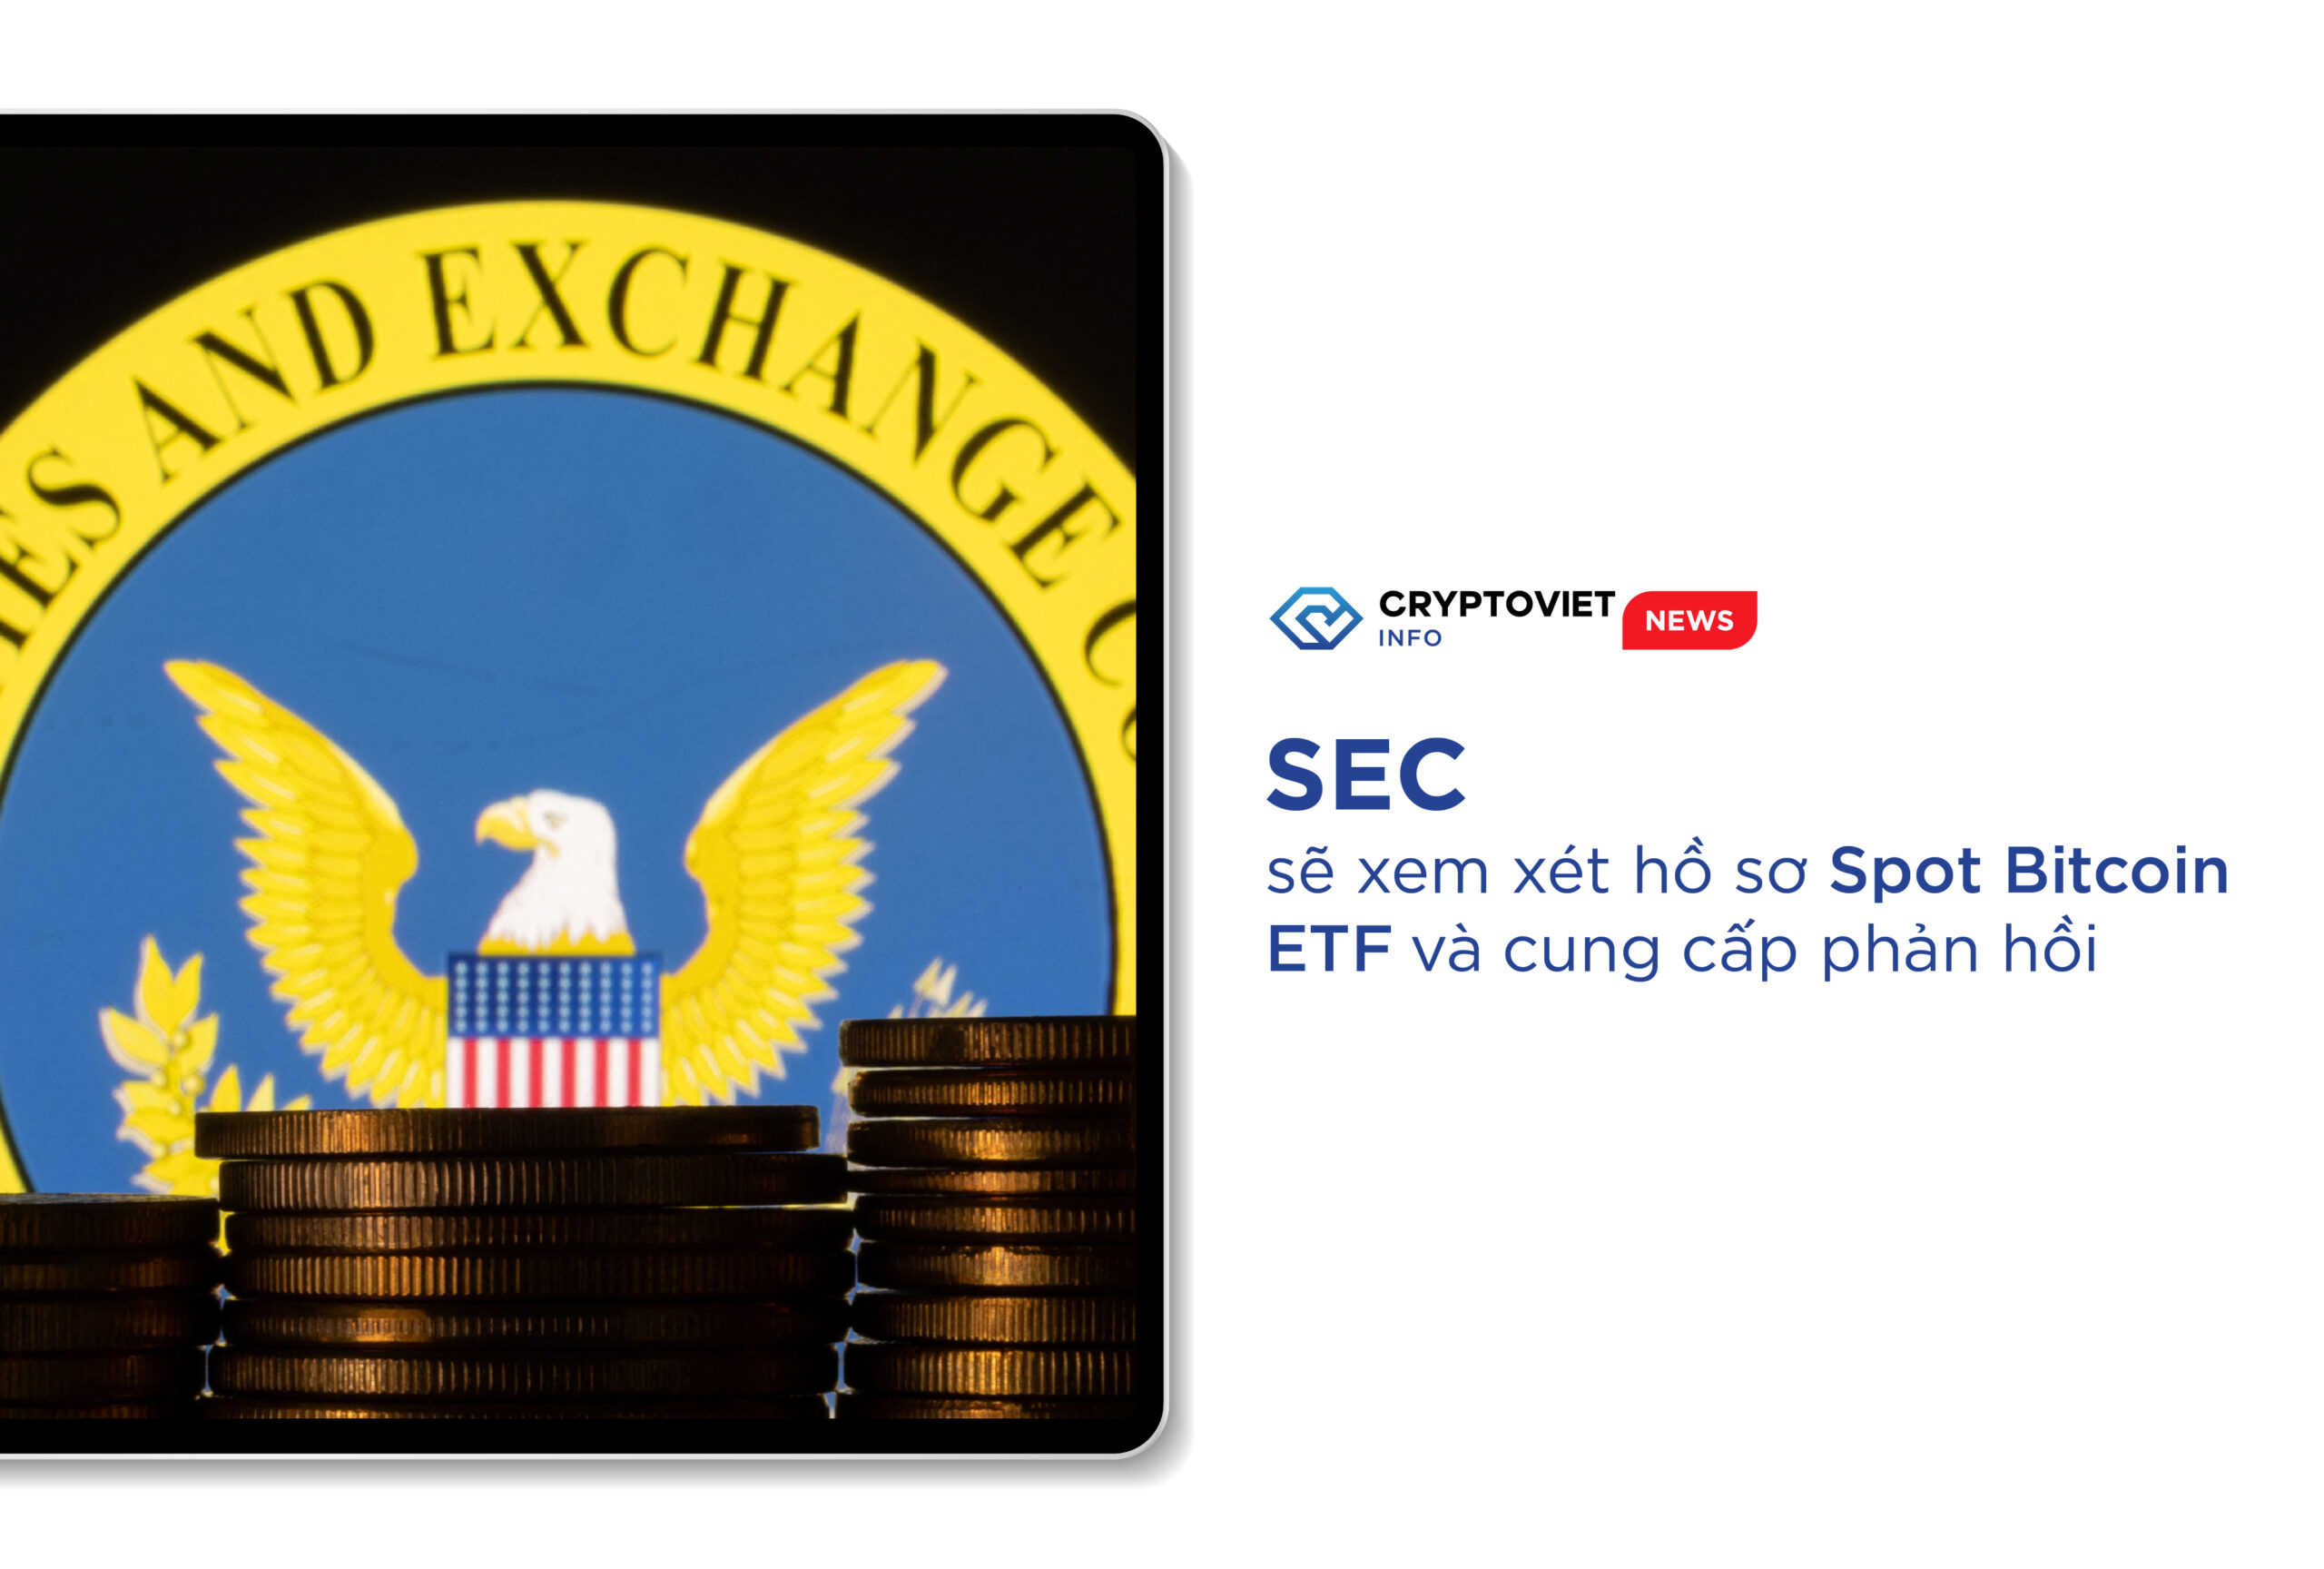  SEC sẽ xem xét hồ sơ Spot Bitcoin ETF và cung cấp phản hồi